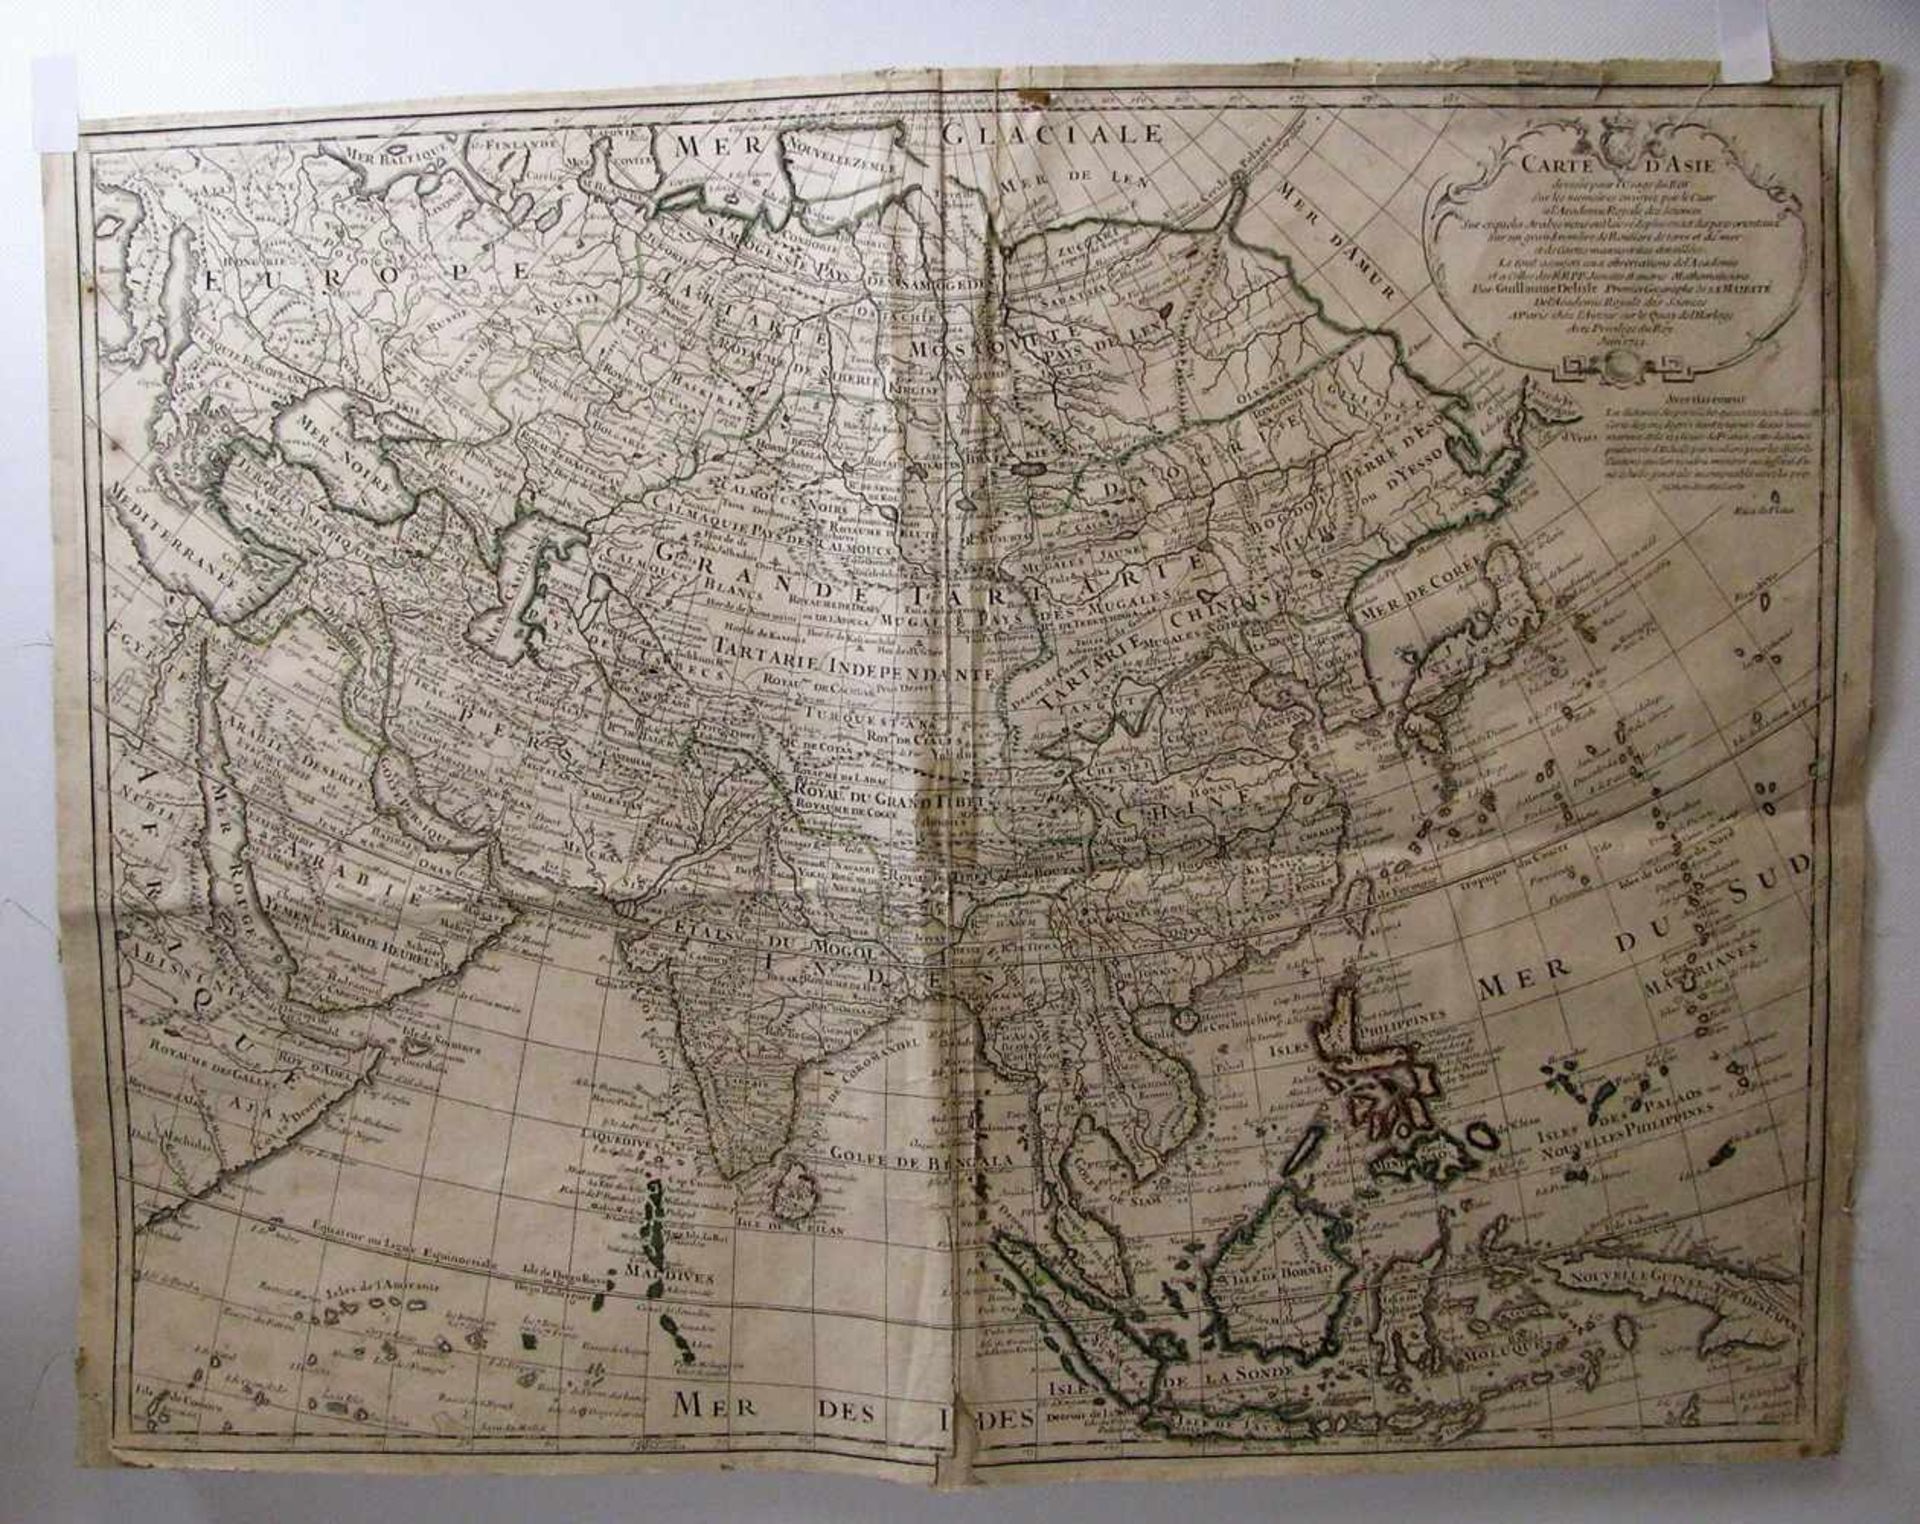 Kupferstichkarte, 1723, "Asien", altcol., besch., 50 x 65 cm, o.R.- - -19.00 % buyer's premium on